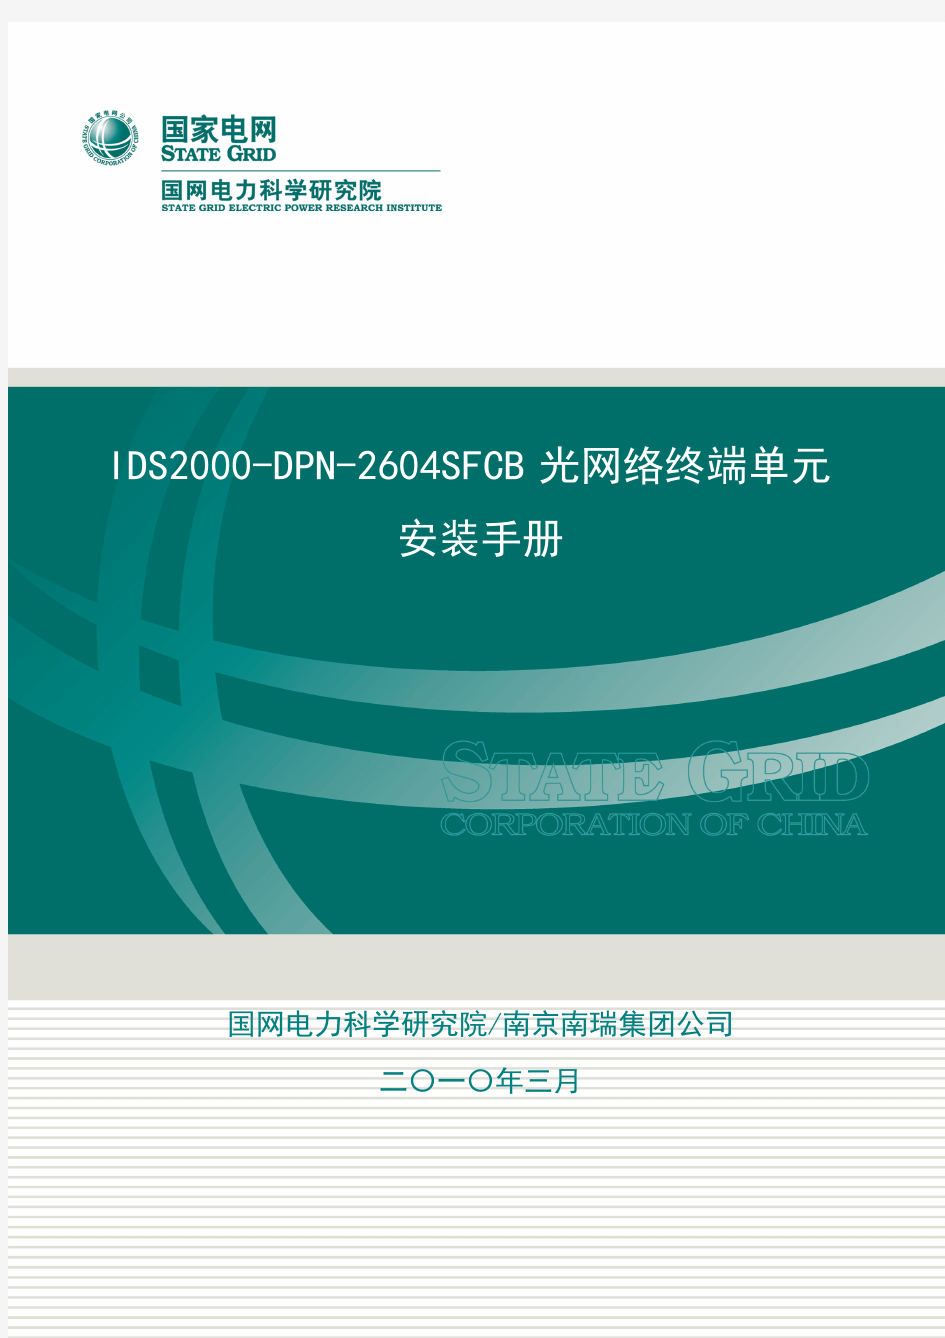 ONU 2604SFCB 光网络终端单元安装手册V1.0